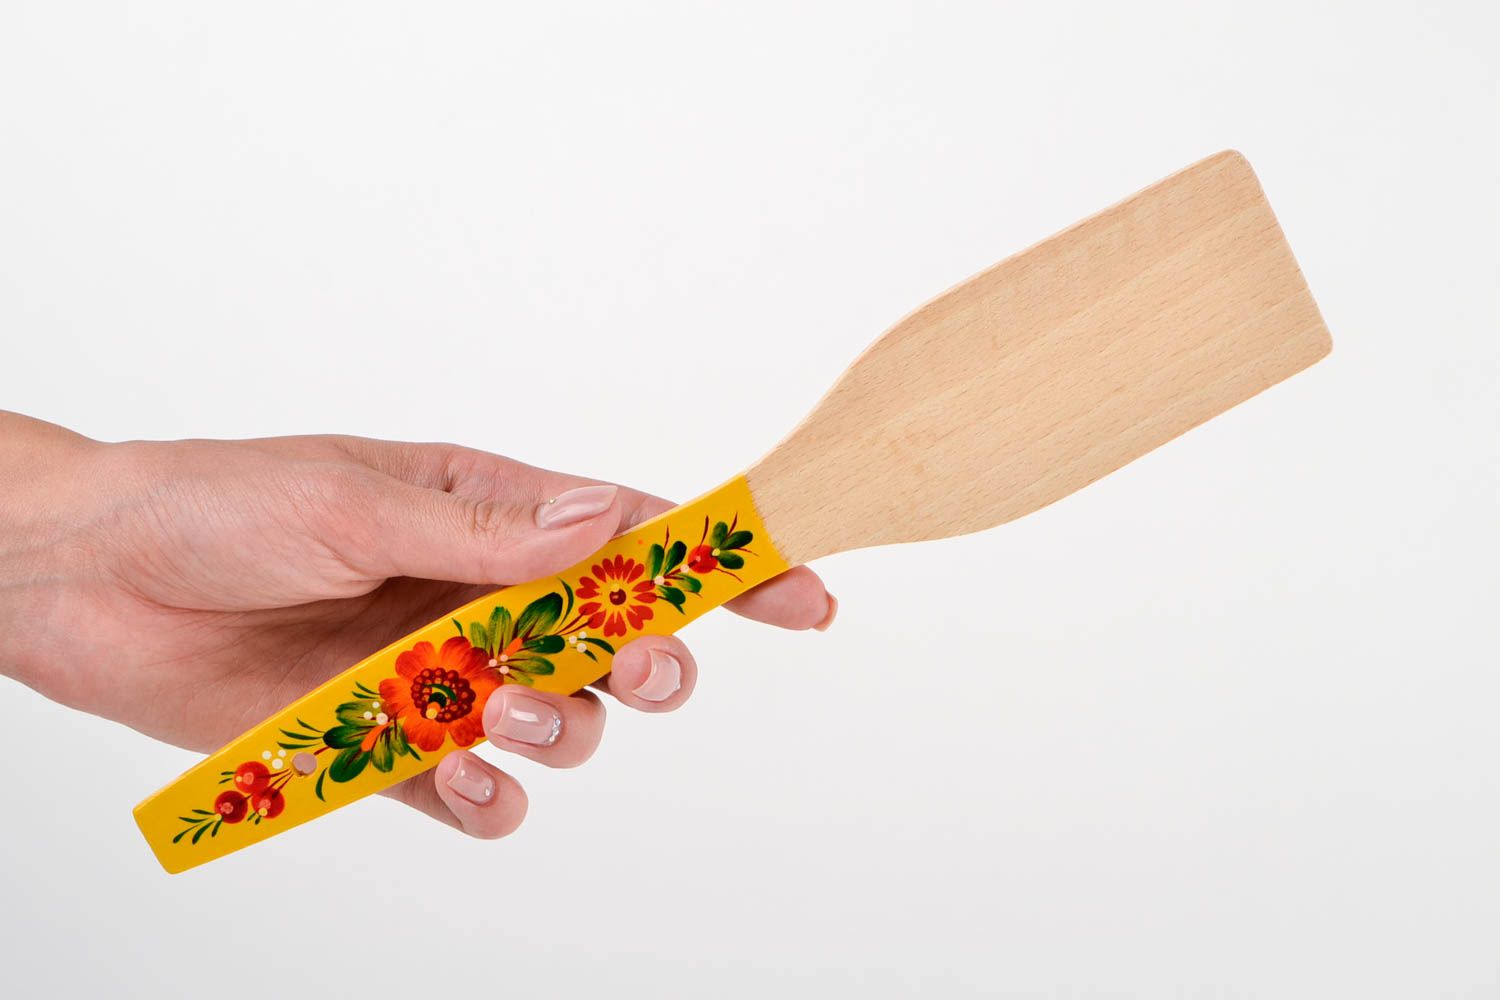 Handmade beautiful spatula stylish wooden utensil painted kitchen accessory photo 2